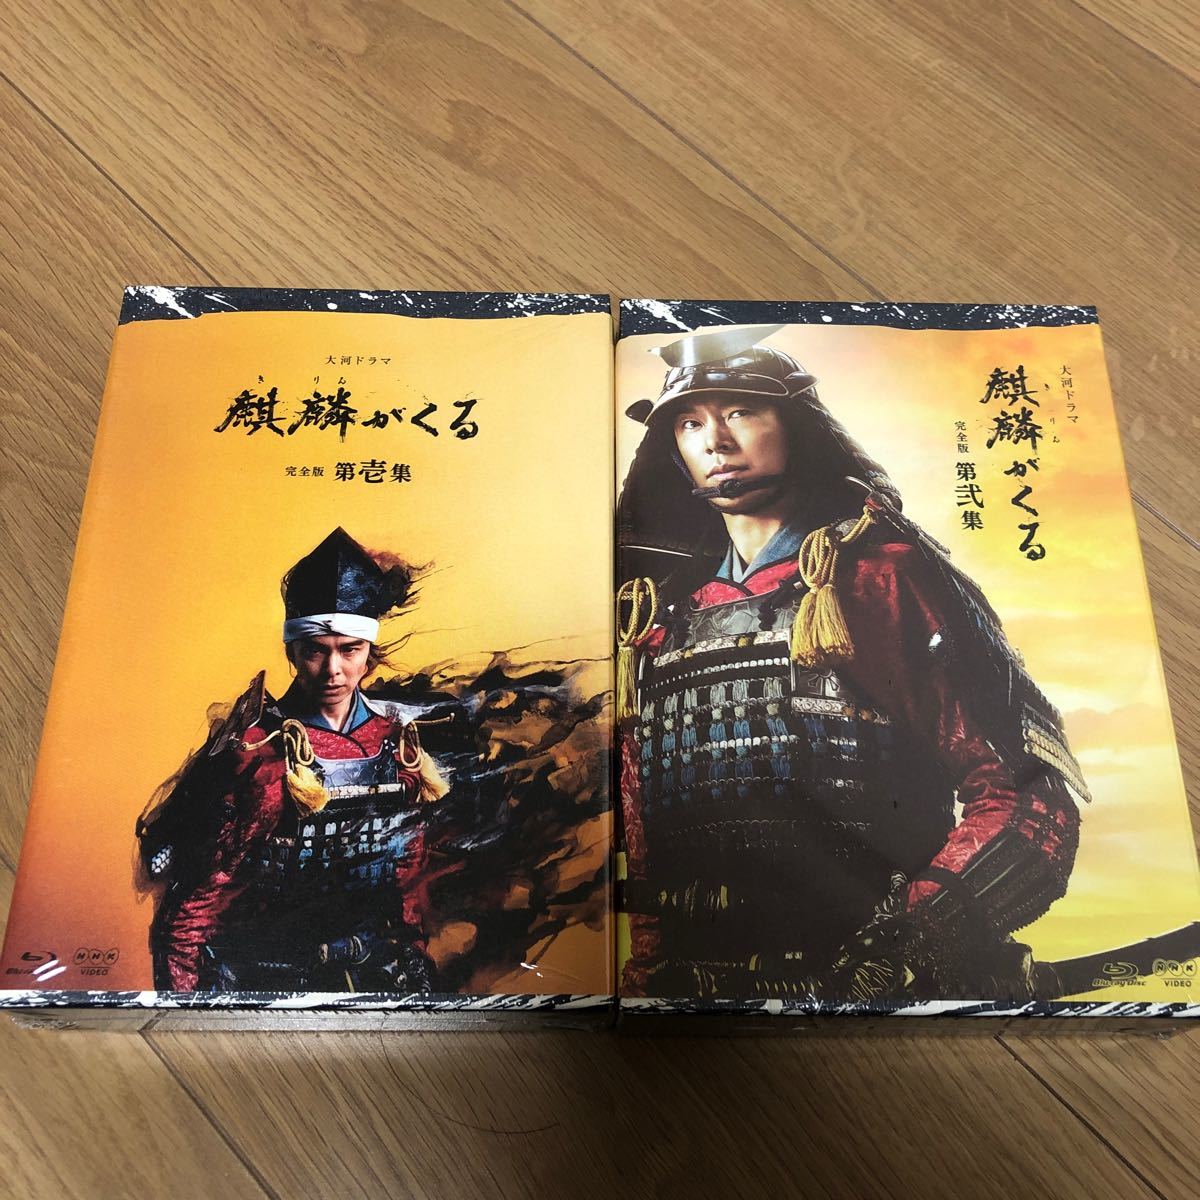 大河ドラマ 麒麟がくる 完全版 第壱集 ブルーレイ BOX [Blu-ray] +完全